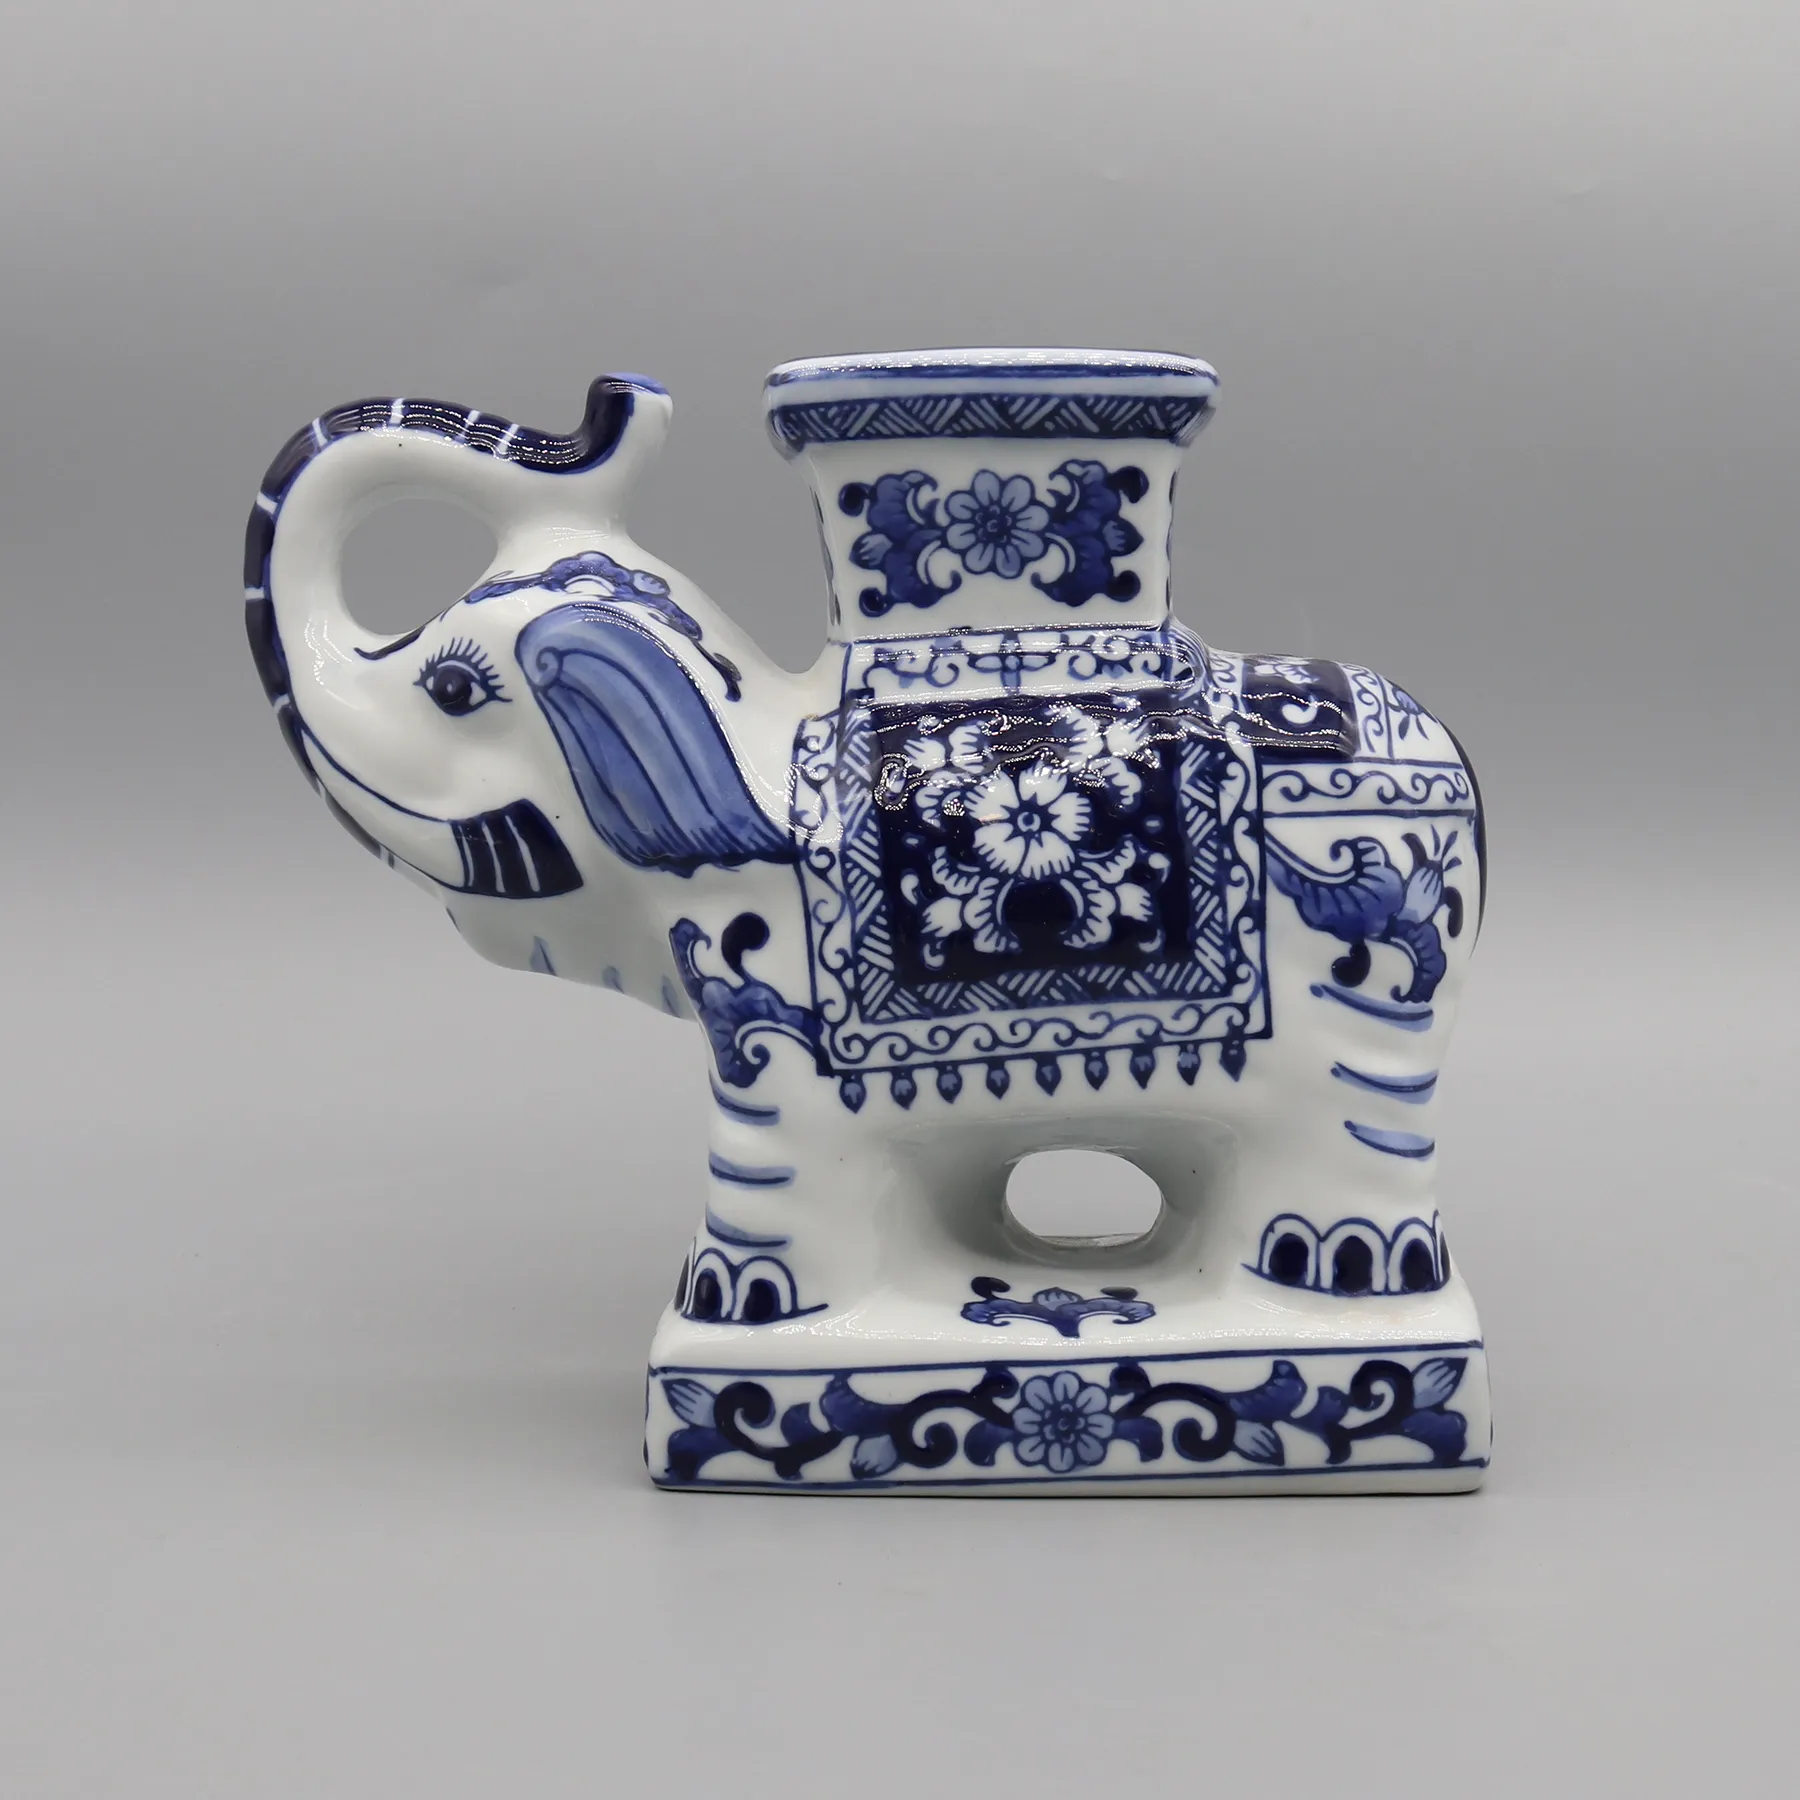 Statua di elefante in ceramica, statuetta di animali decorativi, decorazione domestica